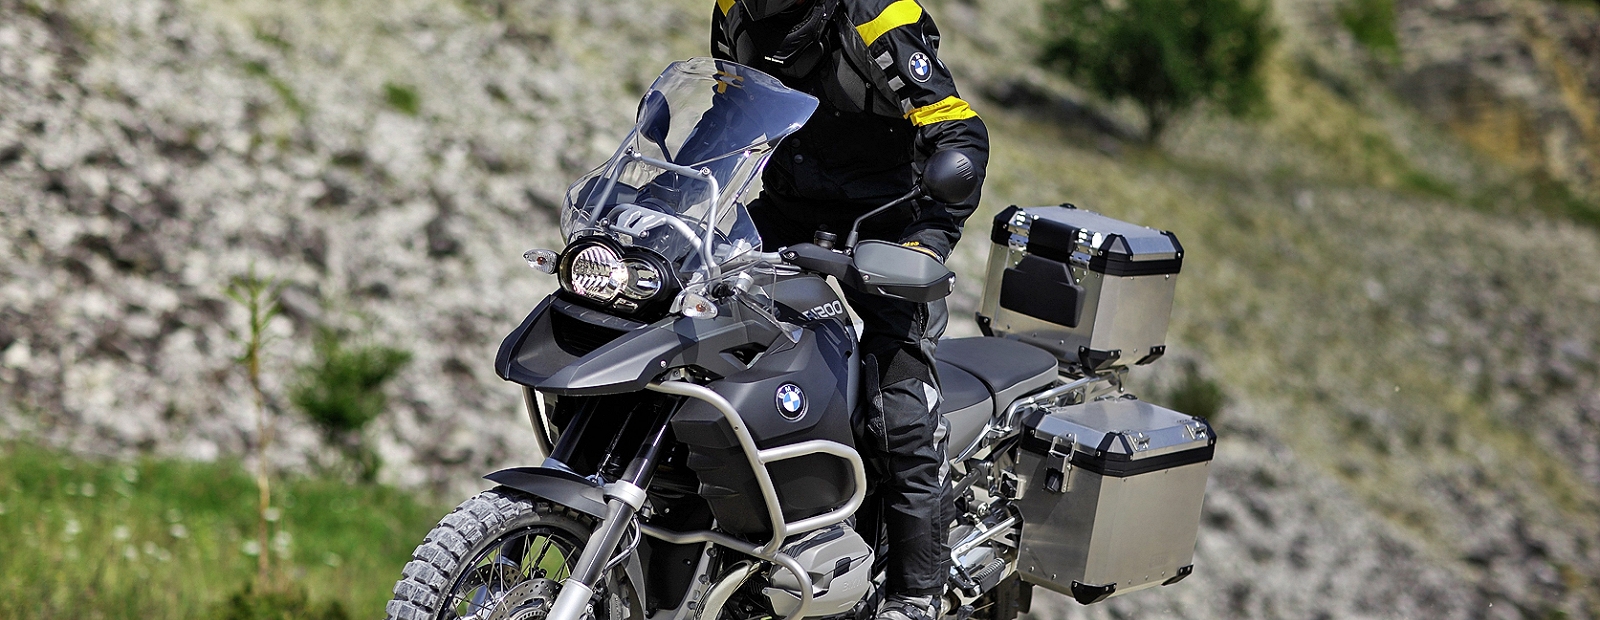 Мотоцикл bmw r1200gs adventure: кратко и понятно